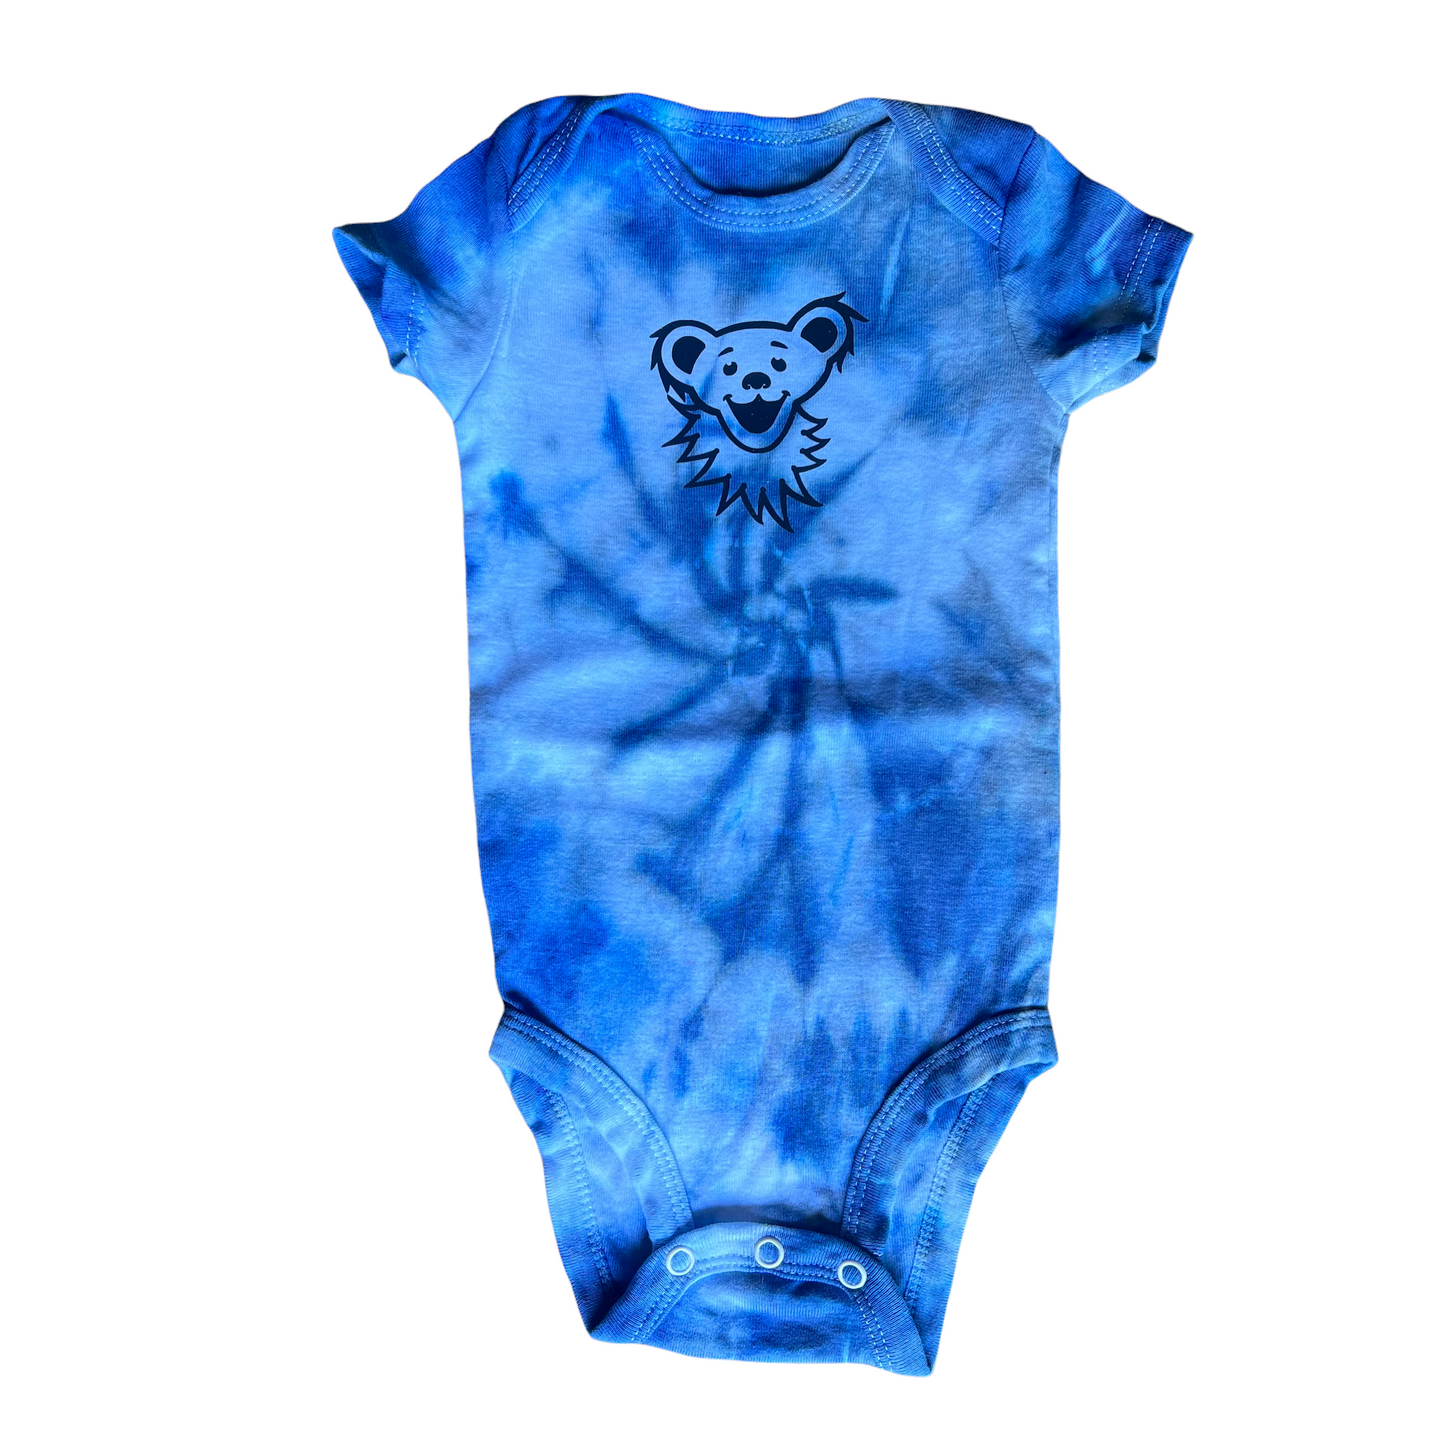 3-6 month baby onesie - bear